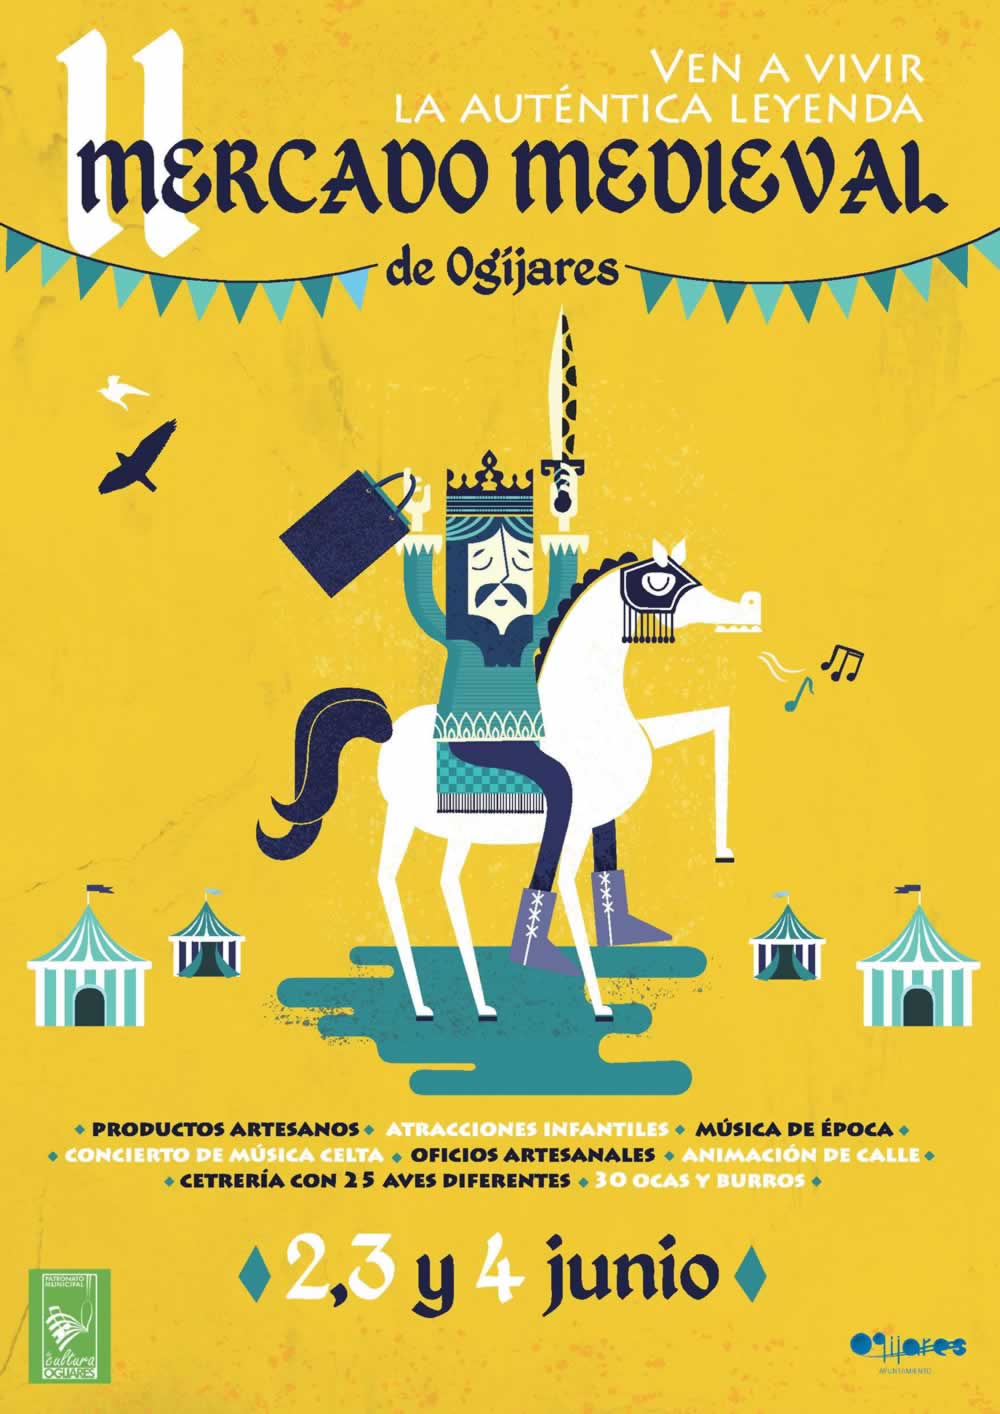 Mercado medieval en Ogijares, Granada del 02 al 04 de Junio del 2017